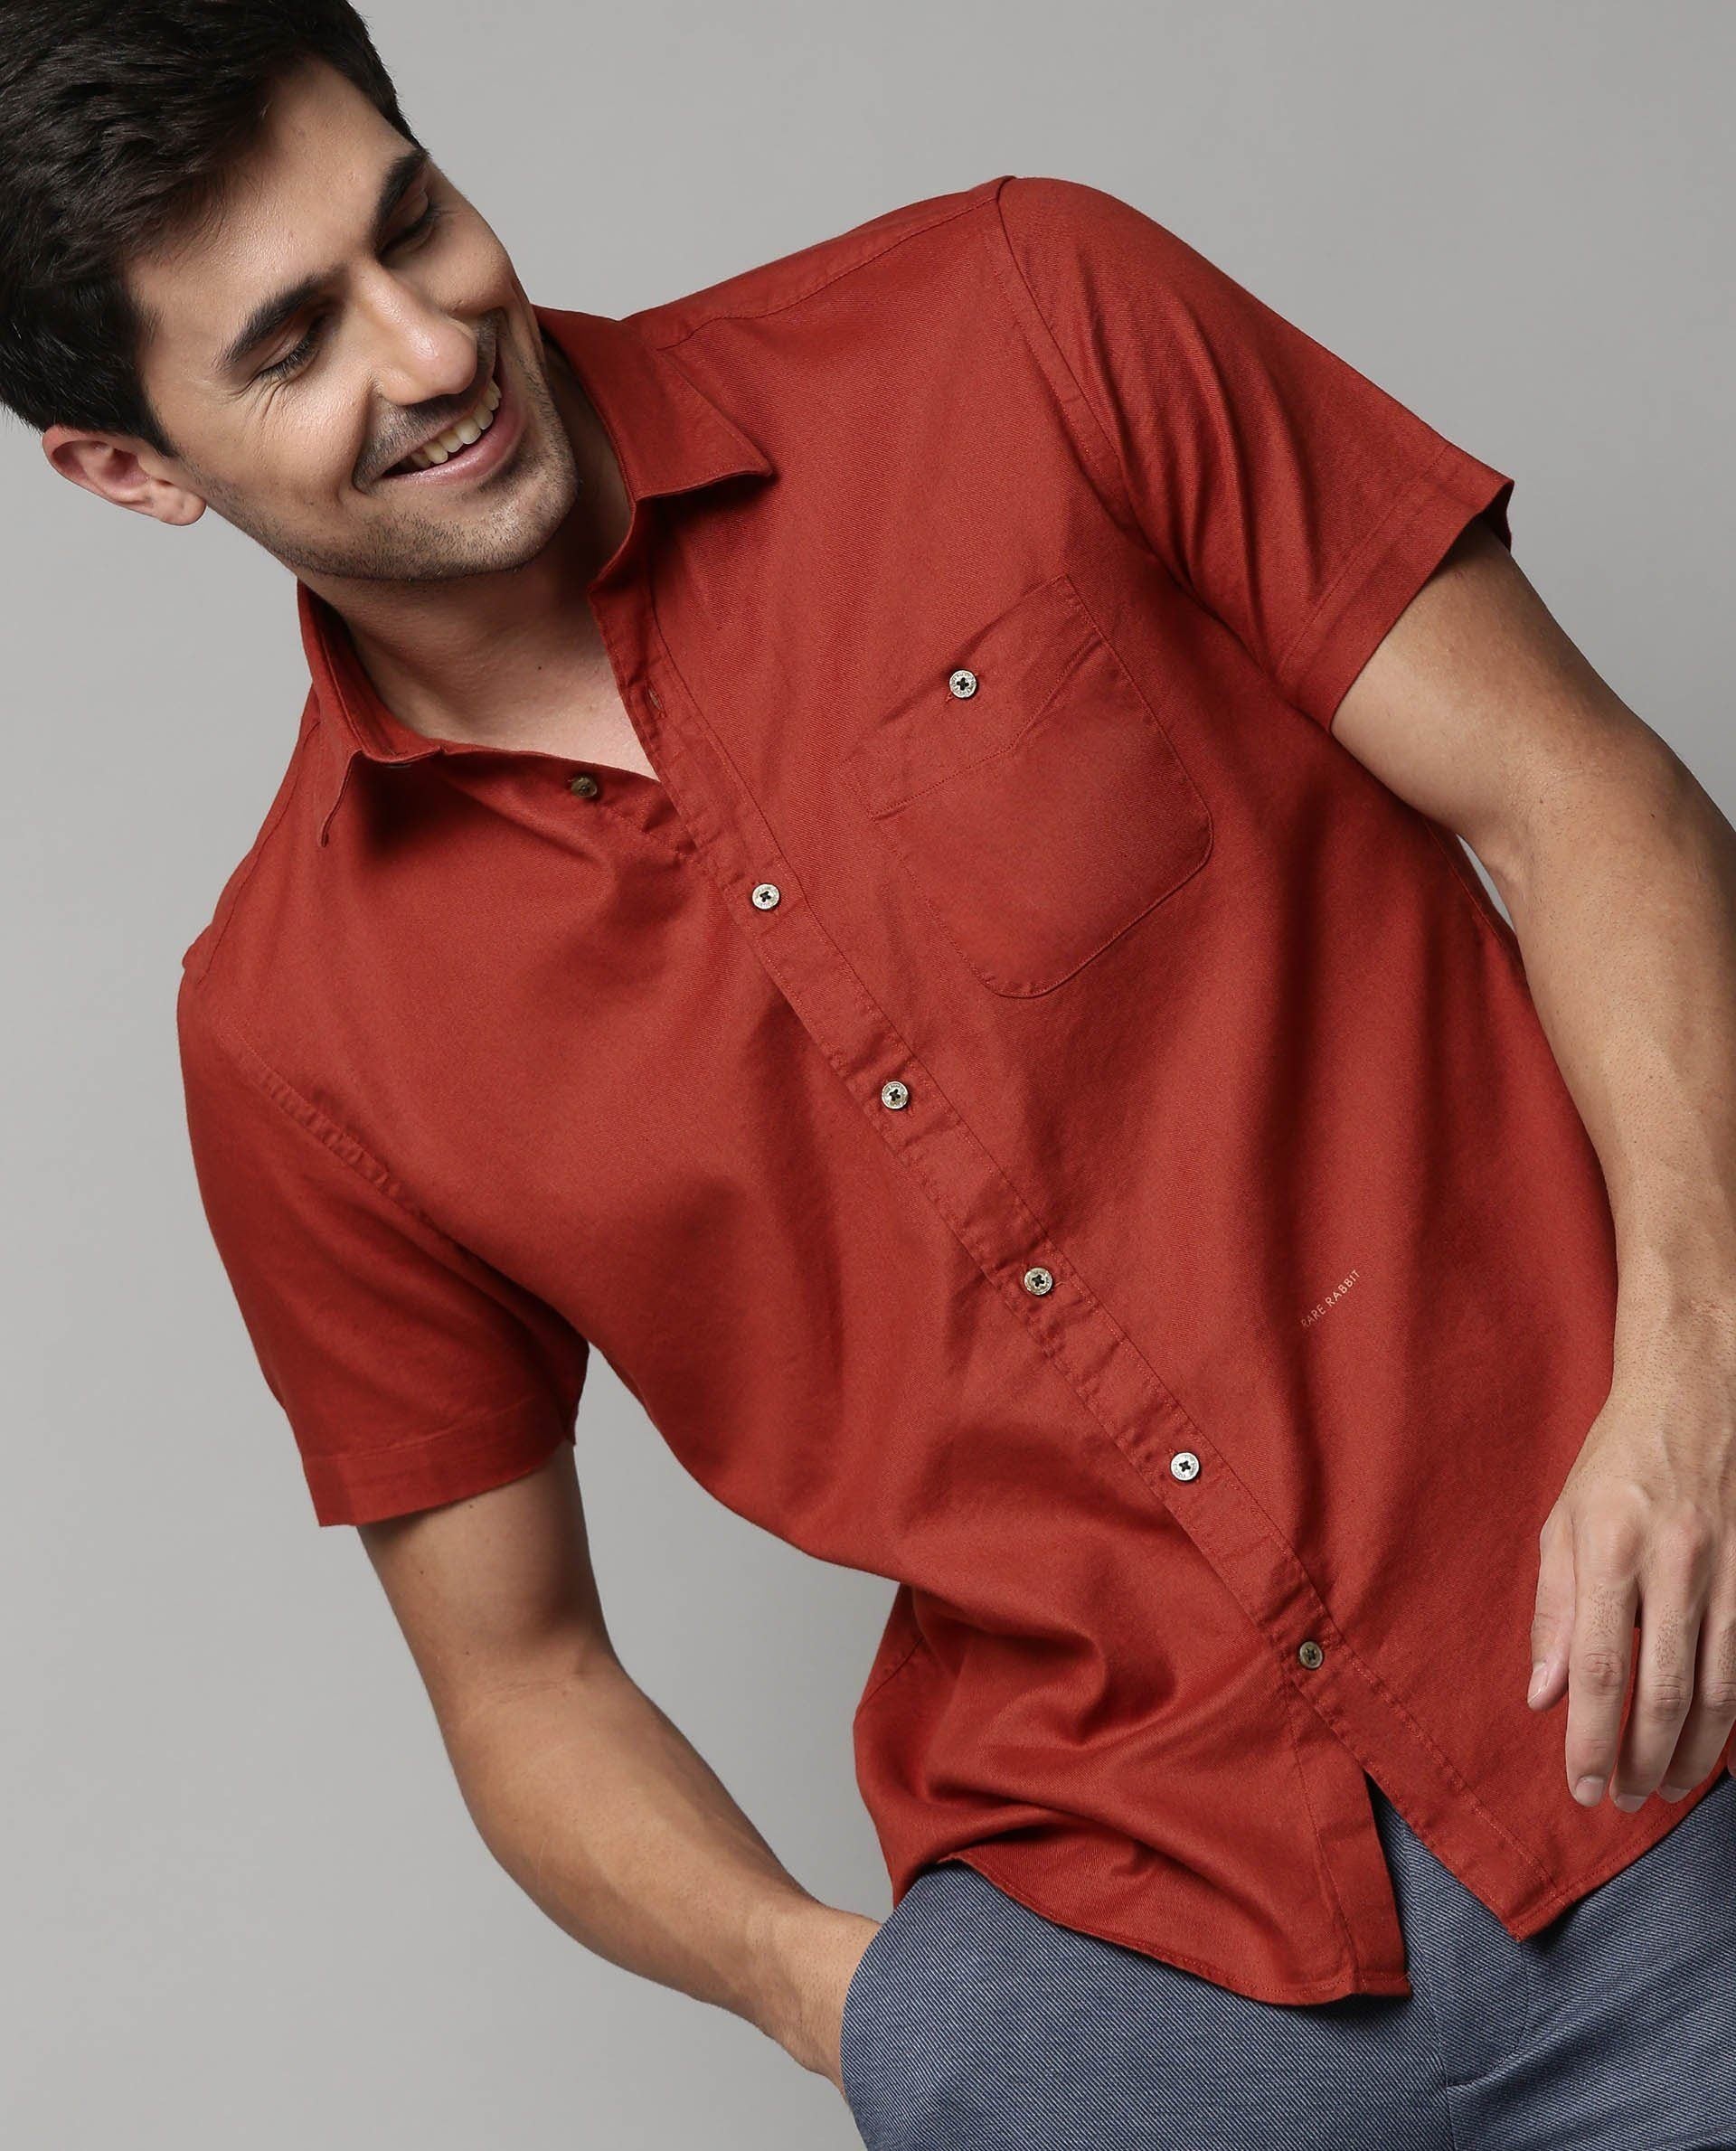 plain red shirt for men